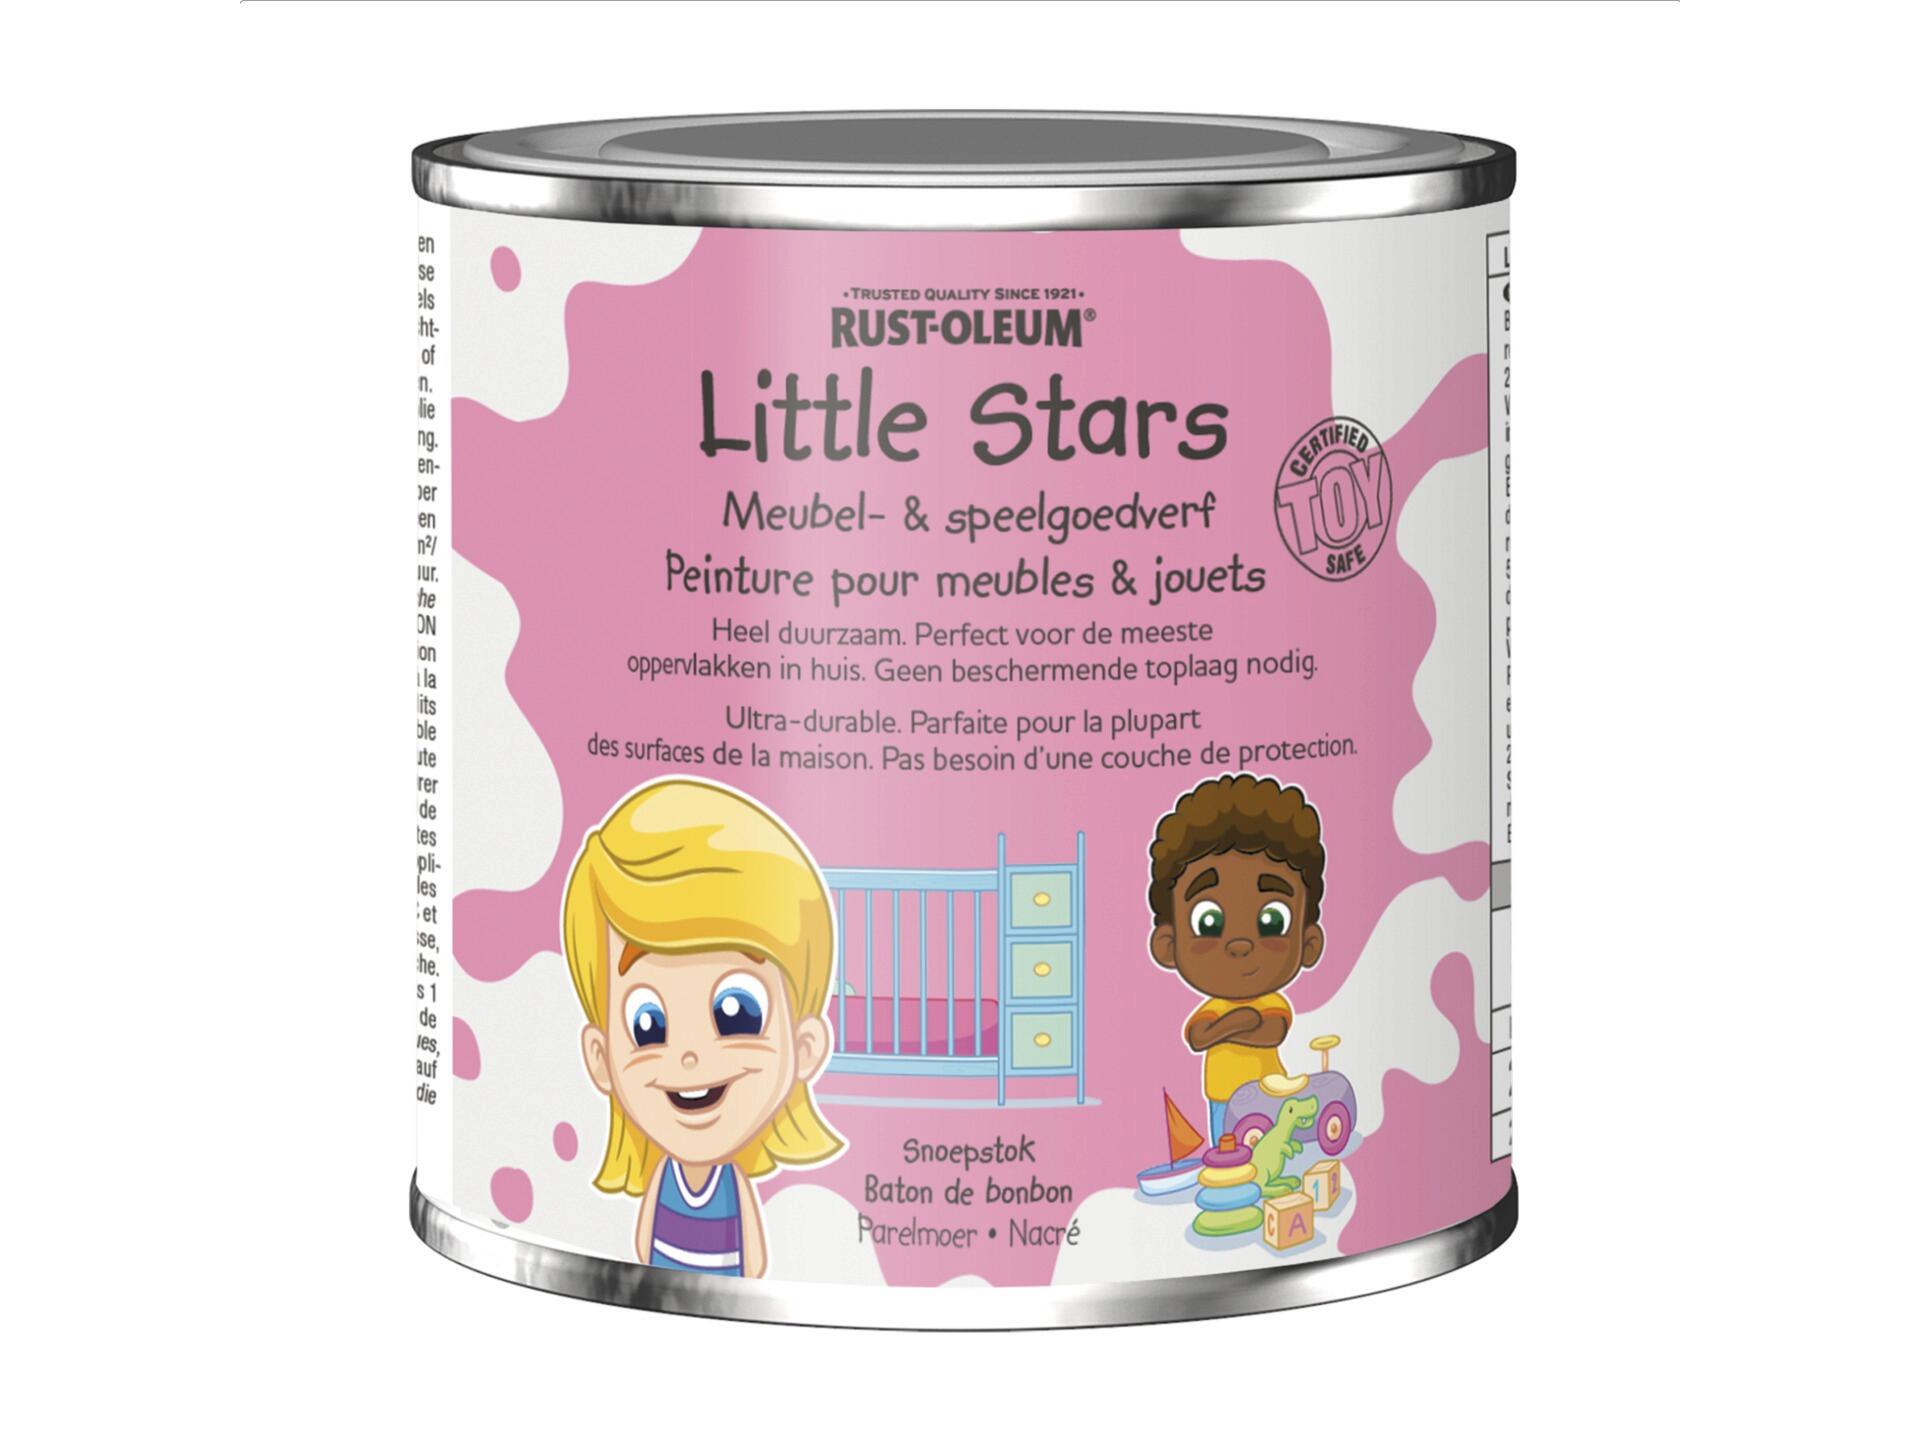 Rust-oleum Little Stars peinture pour meubles et jouets 250ml baton de bonbon